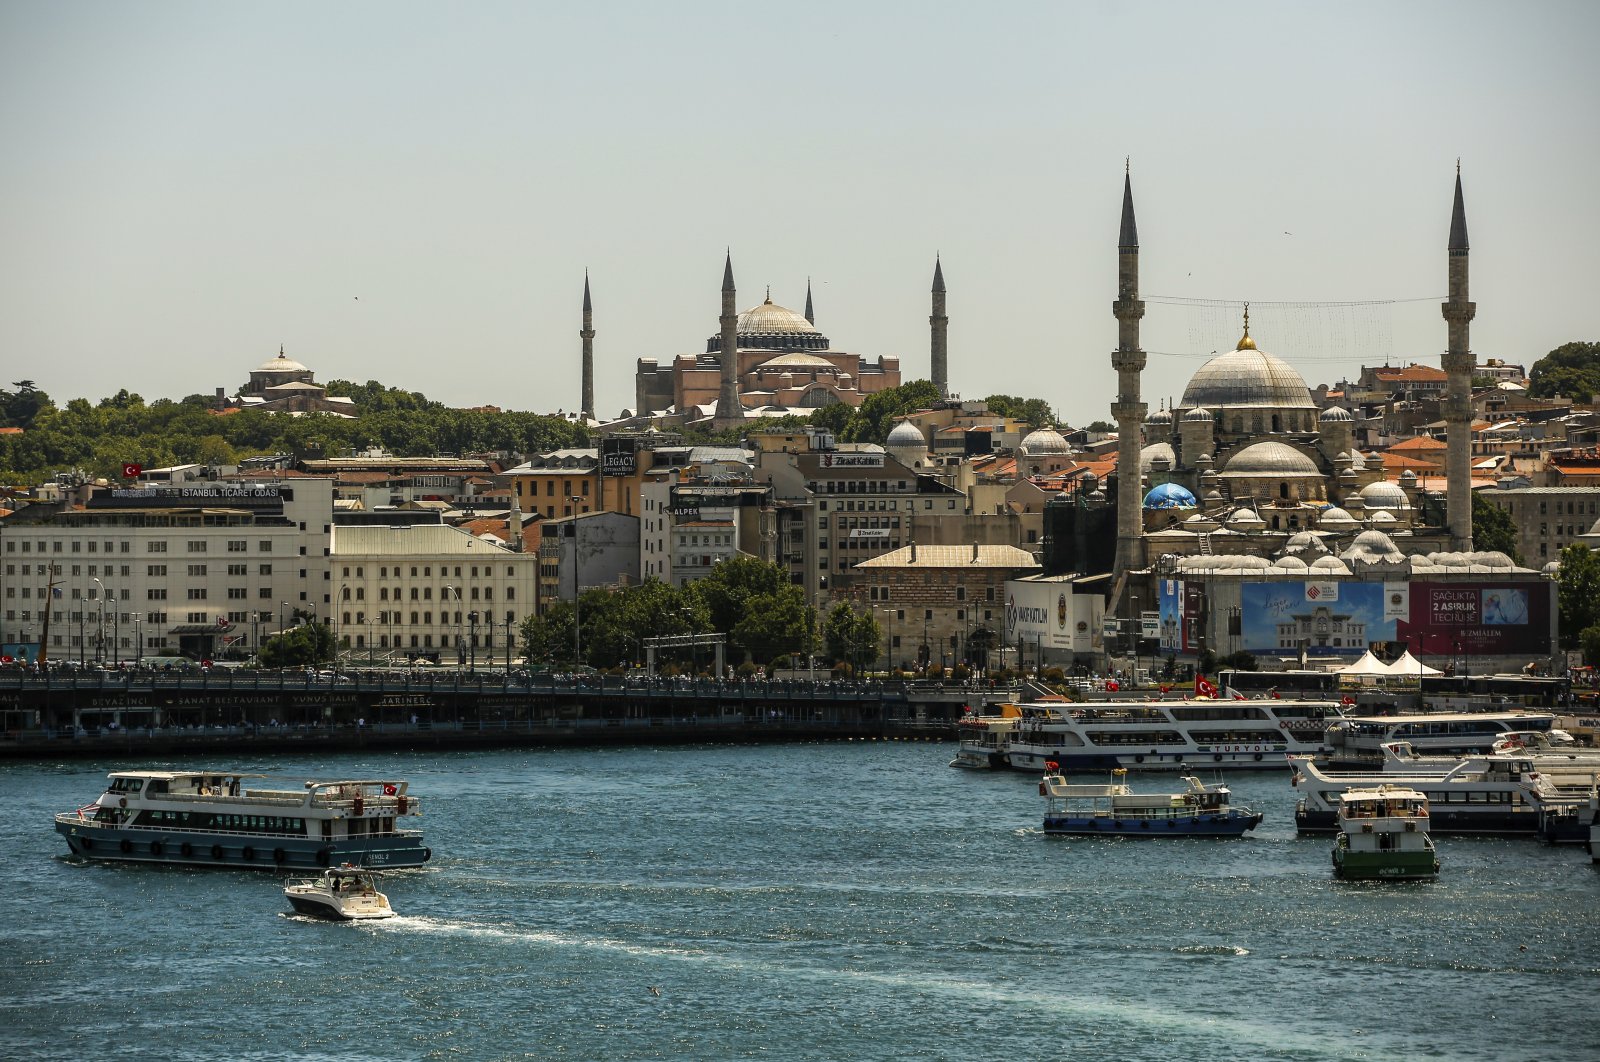 Istanbul tempat paling terjangkau untuk pindah di dunia: studi berbasis di Inggris